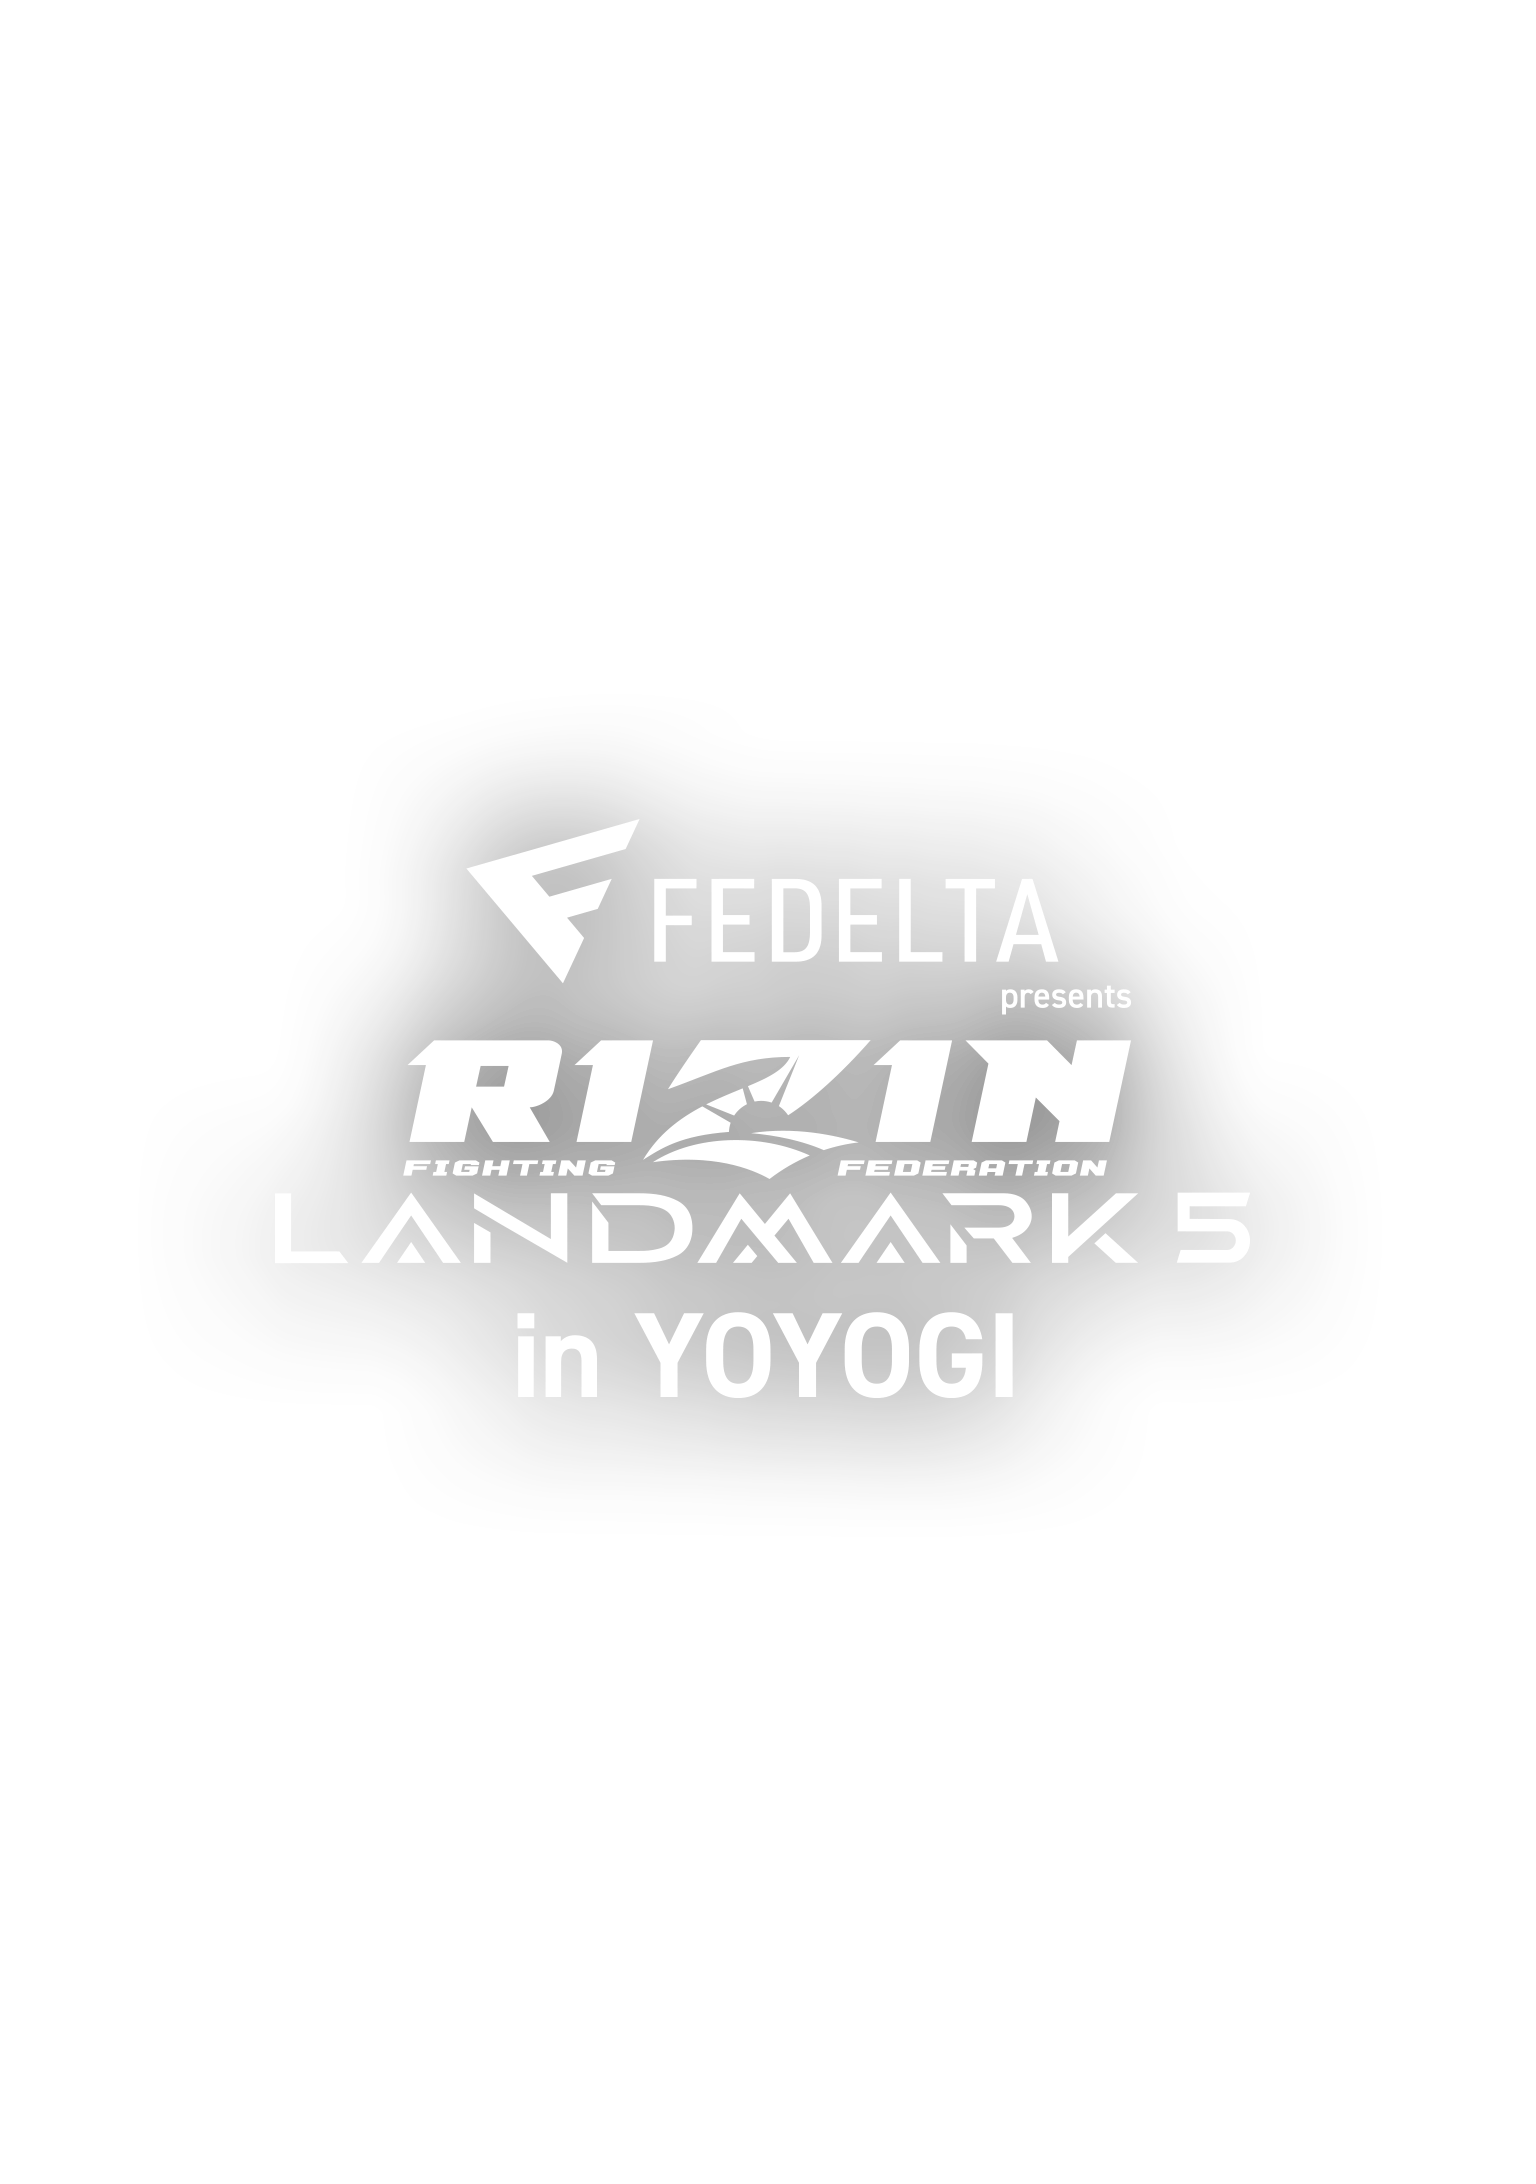 FEDELTA presents RIZIN LANDMARK 5 in YOYOGI